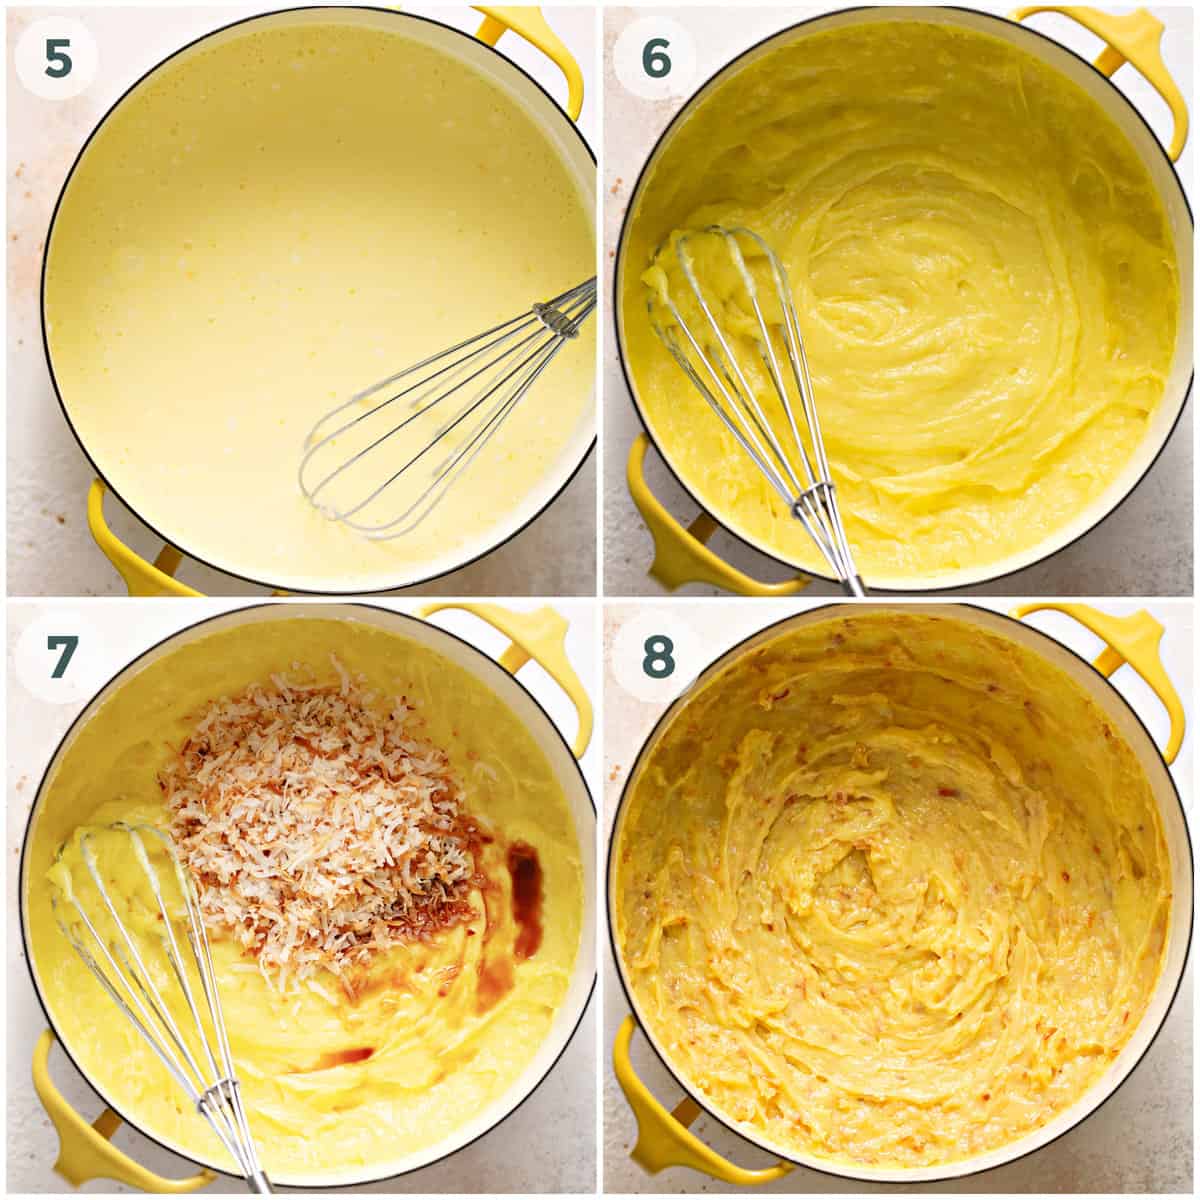 steps 5-6 of preparing coconut cream pie